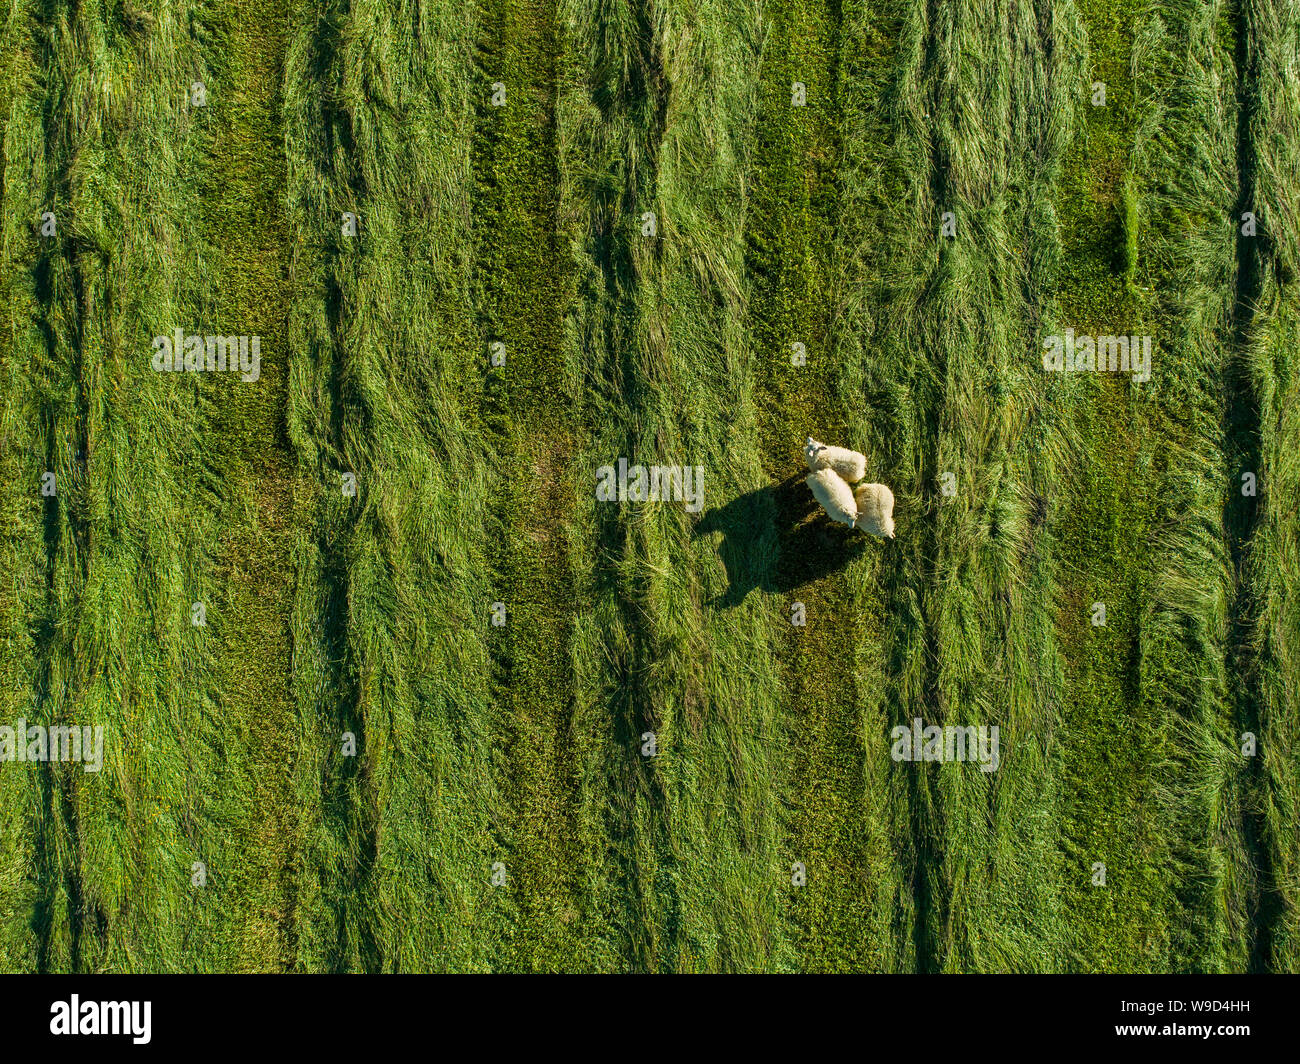 Schaf stehend in einem neu schneiden Wiese - geschossen von oben Stockfoto